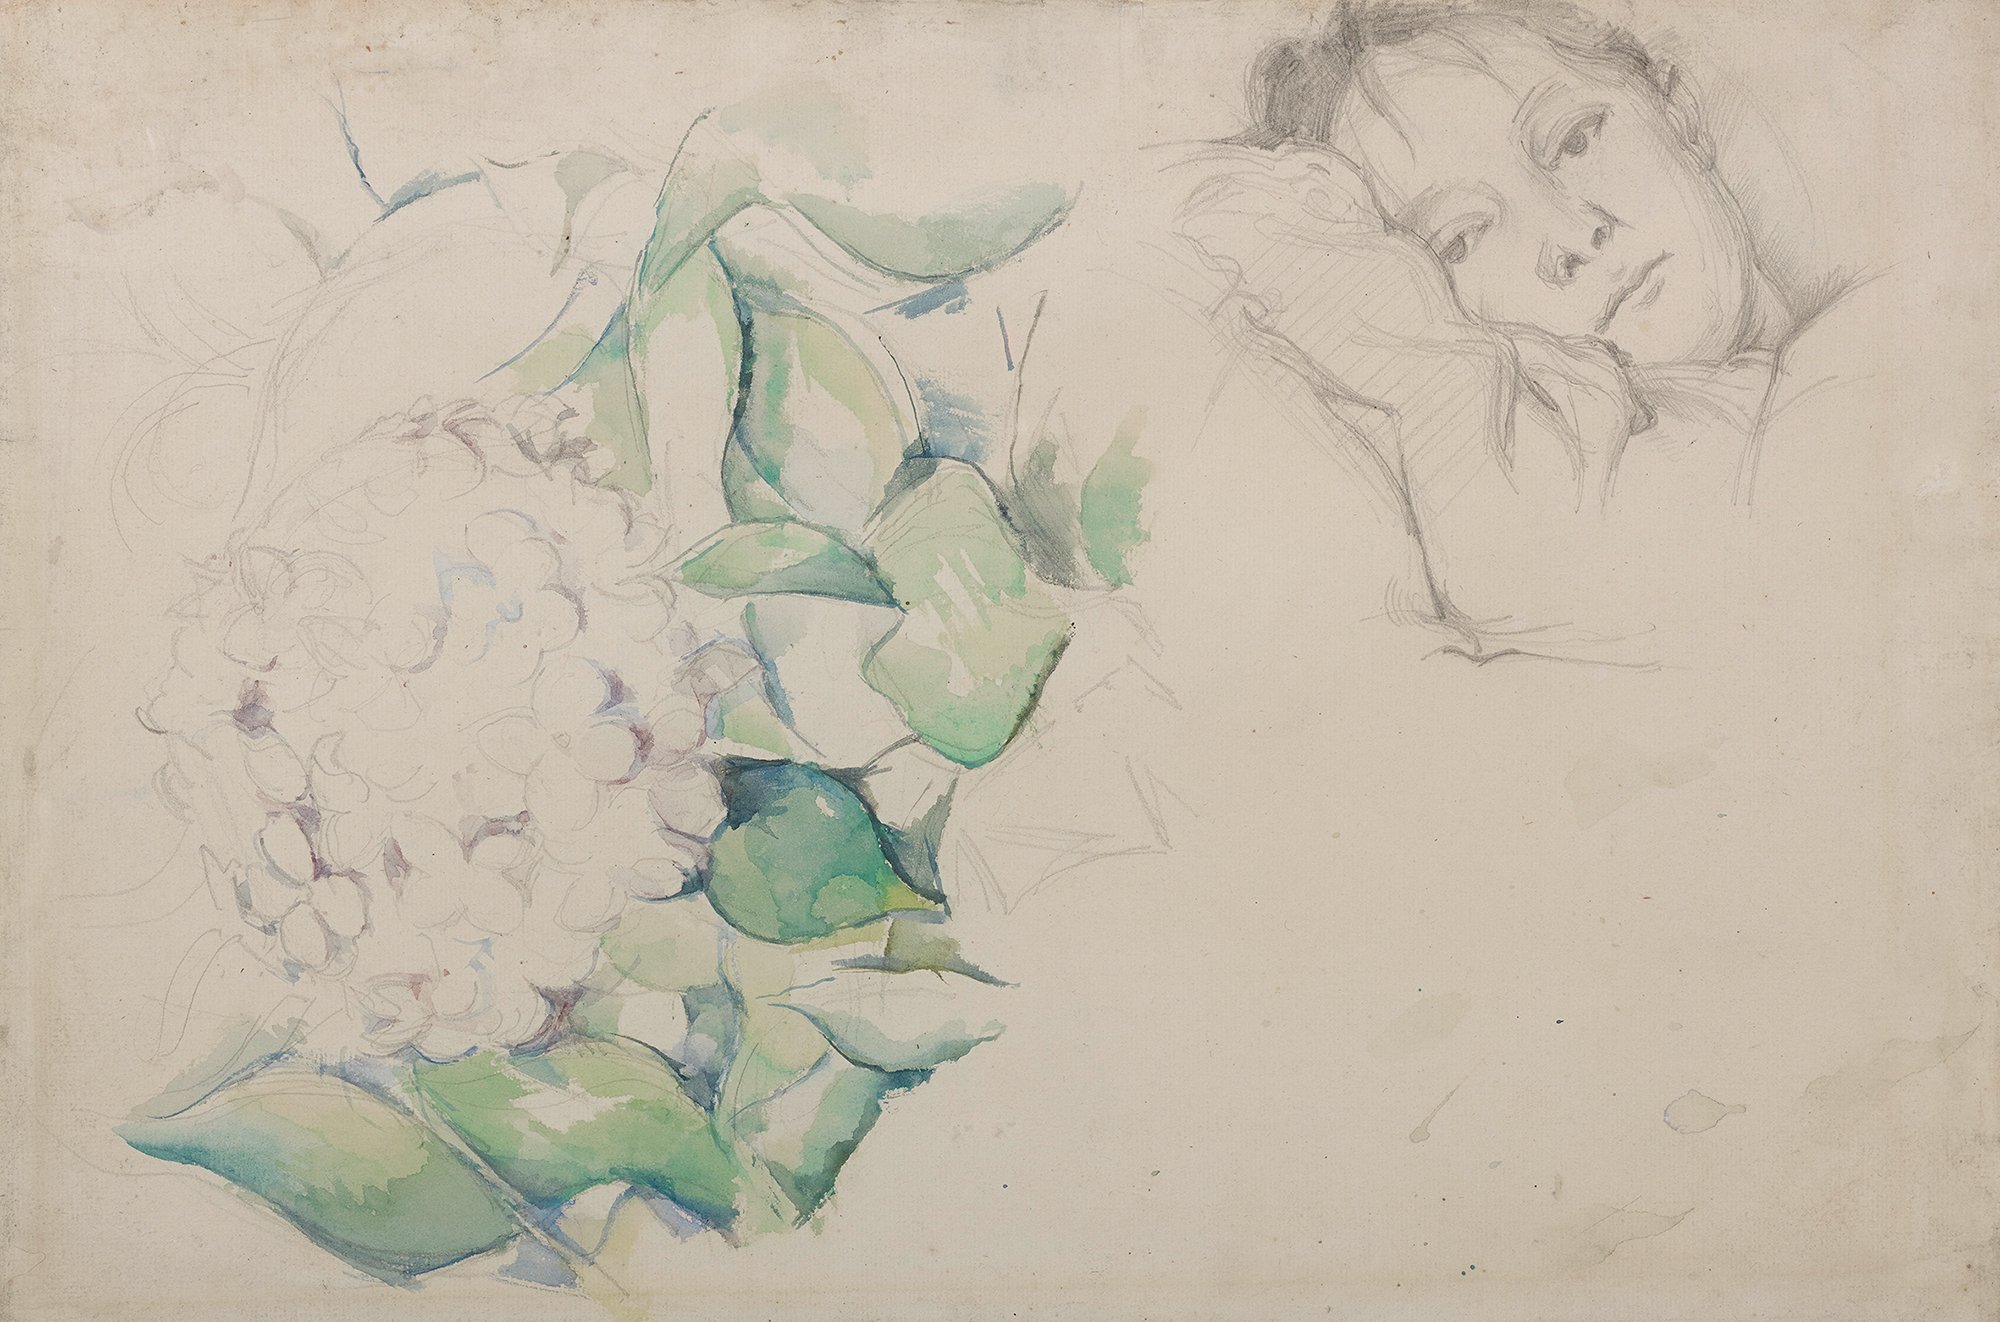 Abbildung des Werks "Bildnis Hortense Cézanne mit Hortensienblüte" des Künstlers Paul Cézanne, das in der Ausstellung "Cézanne Metamorphosen" vom 28. Oktober 2017 bis 11. Februar 2018 in der Staatlichen Kunsthalle Karlsruhe zu sehen war.